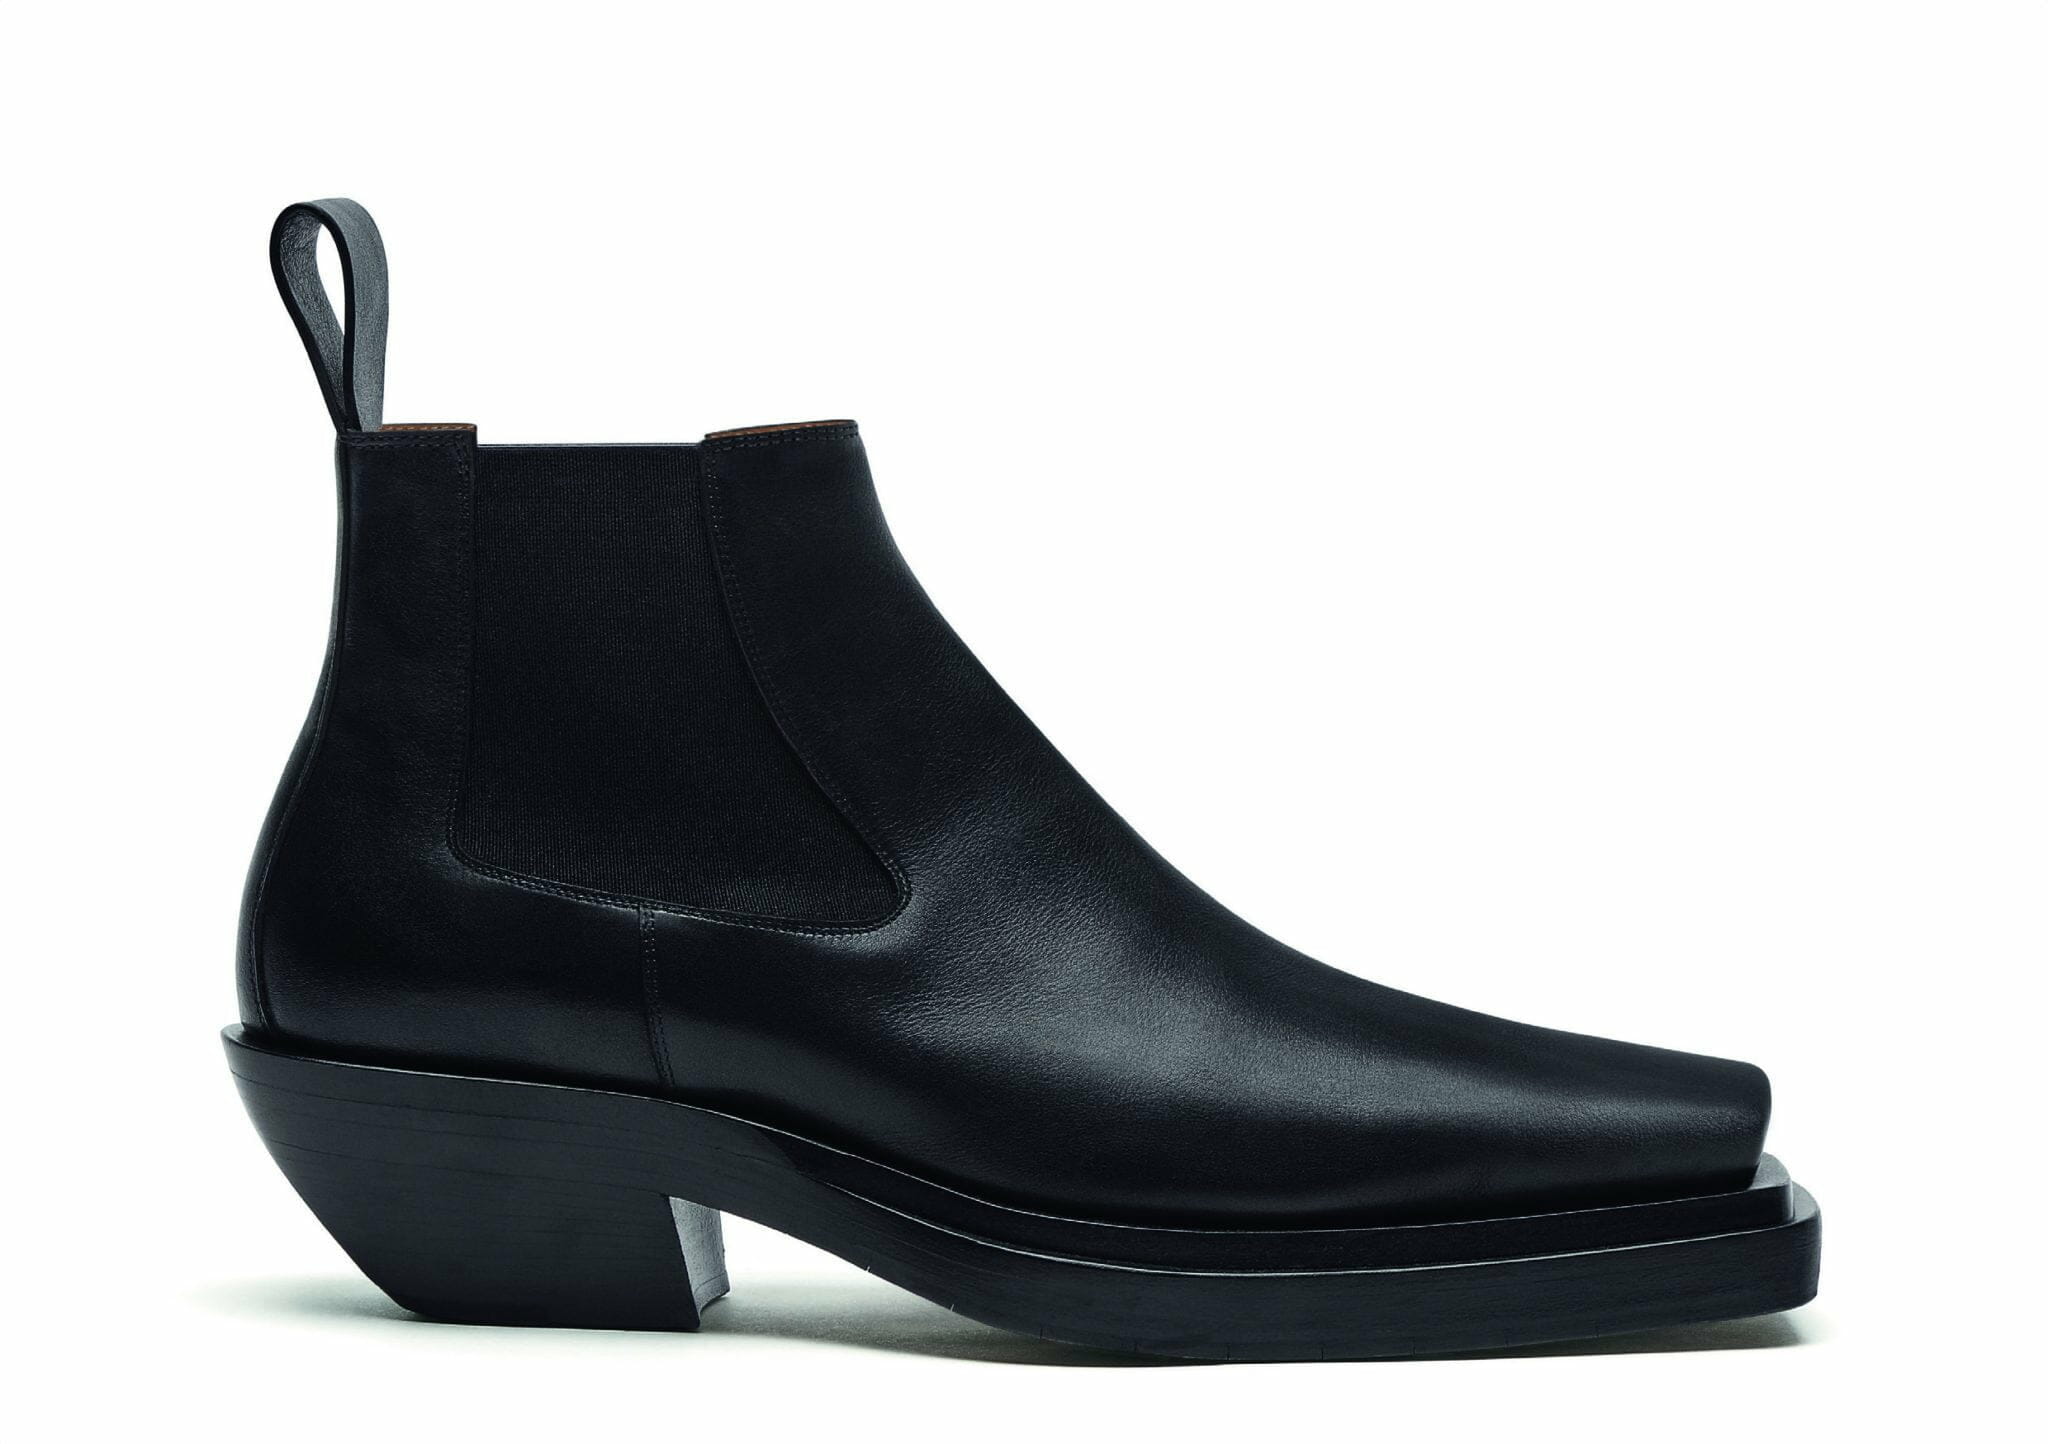 Bottega Veneta เผยโฉมรองเท้าบูทรุ่นใหม่ “THE LEAN” ประจำคอลเล็คชั่น Fall 2020 1